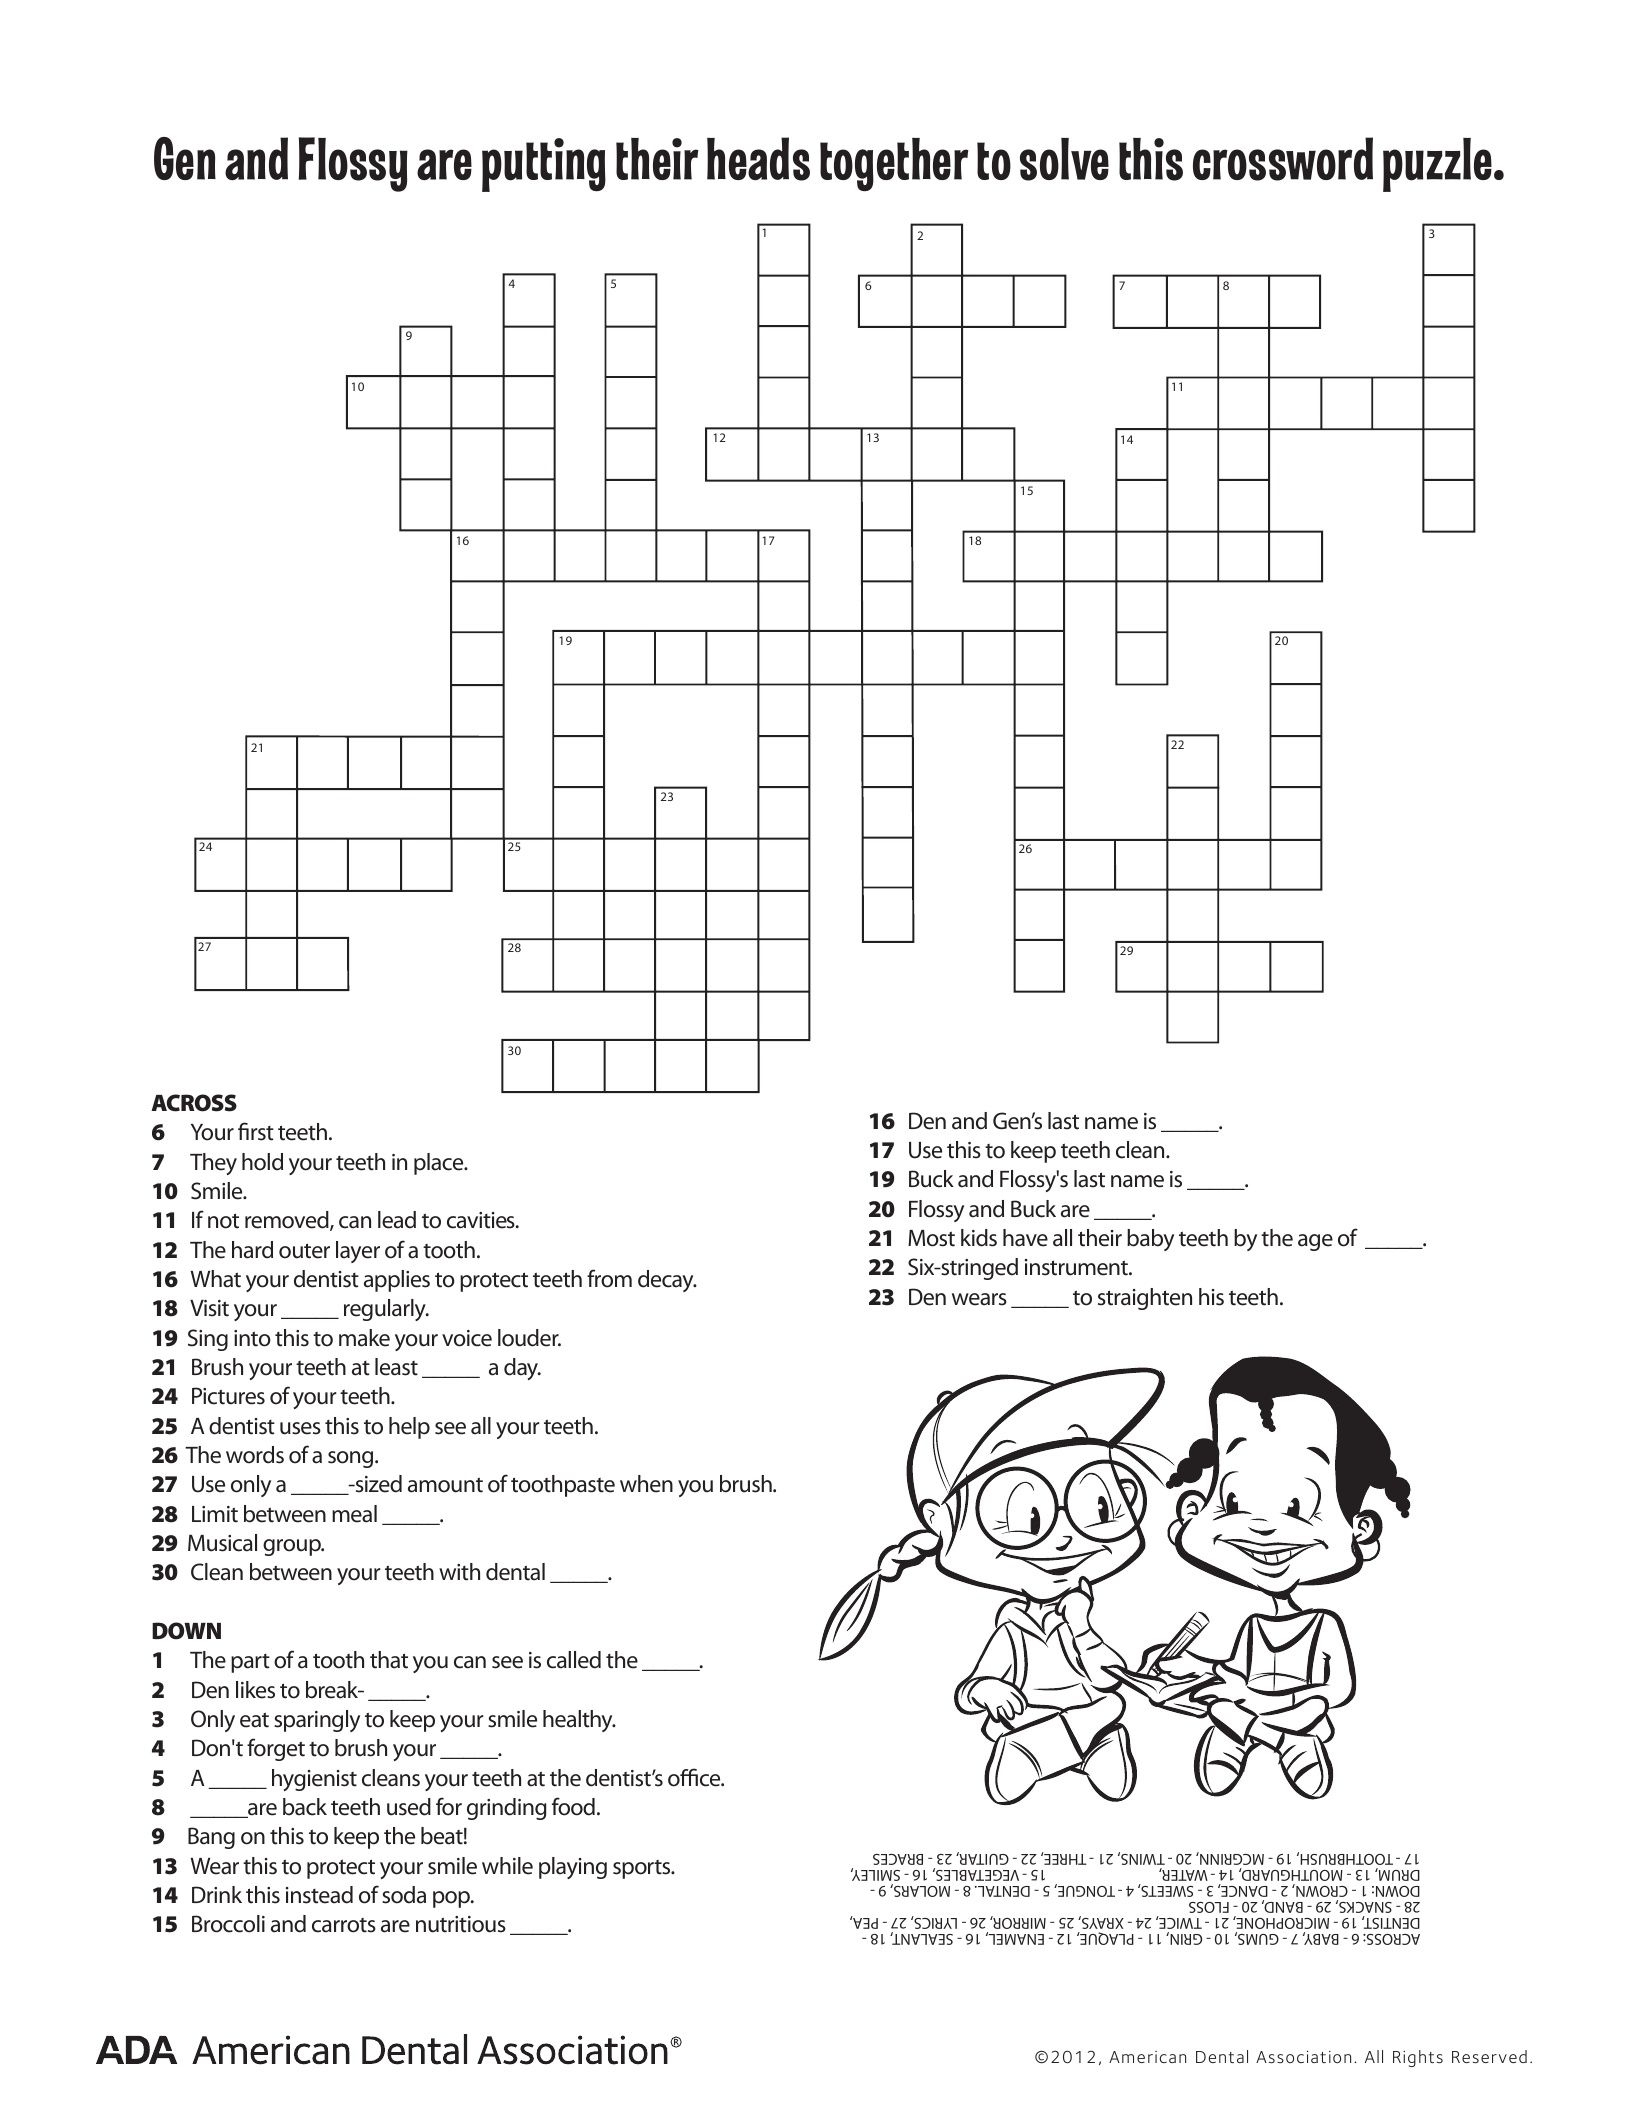 Free Printable Health Crossword Puzzles